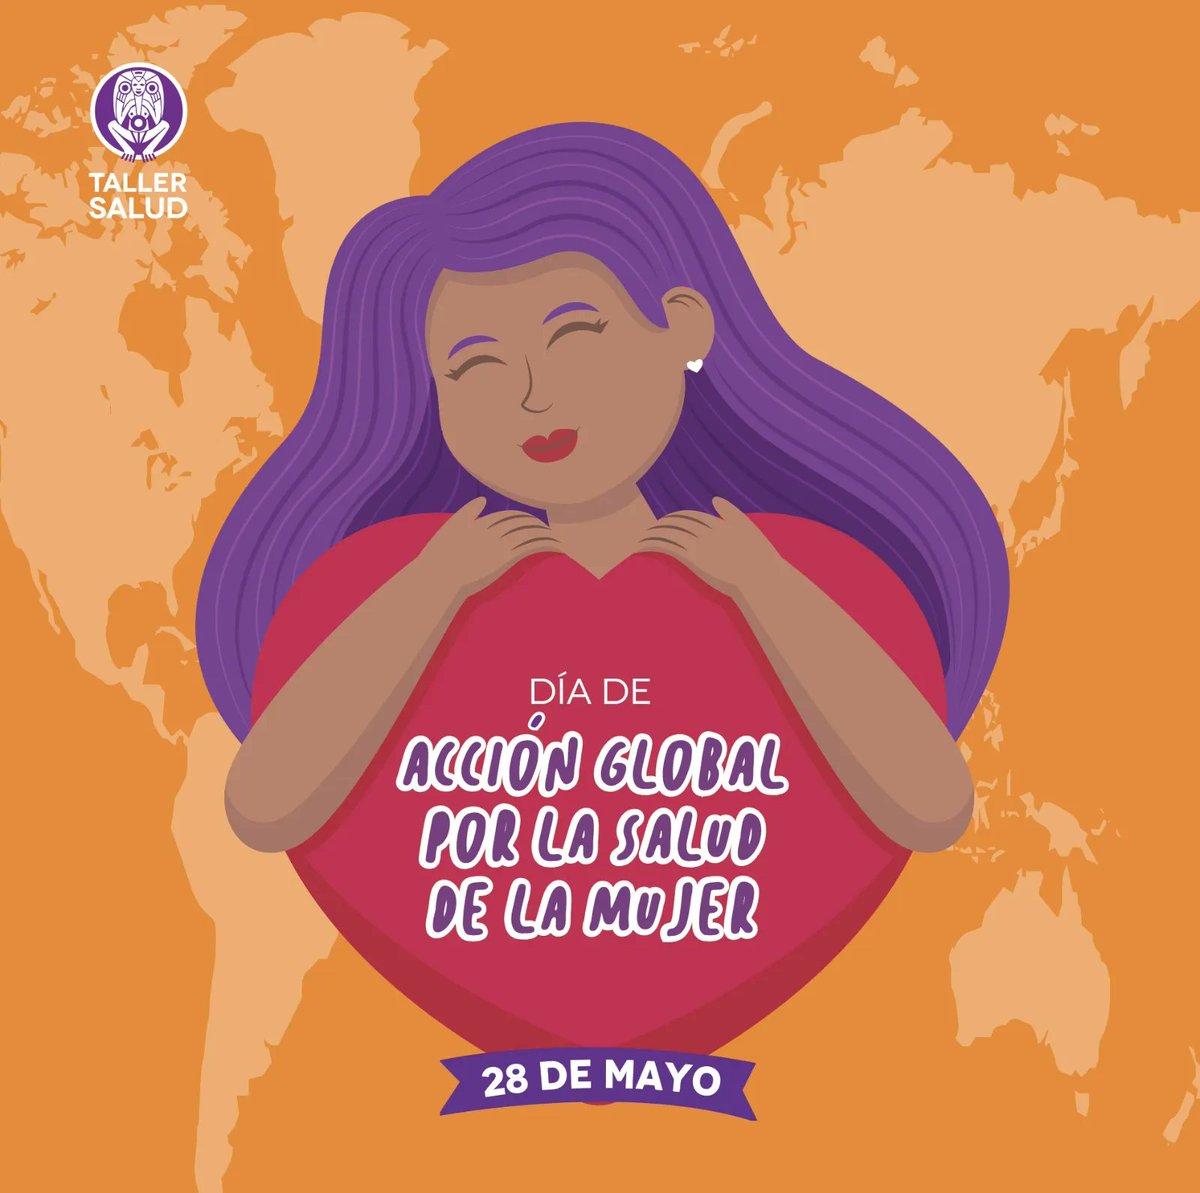 ¡Desde el '79 y seguimos defendiendo la salud de nuestra gente! Hoy es el Día de Acción Global por la Salud de las Mujeres y desde Loíza, reclamamos por el bienestar y la igualdad en la atención médica para todas. #TallerSalud #SaludDeLasMujeres #IgualdadEnLaAtencionMedica